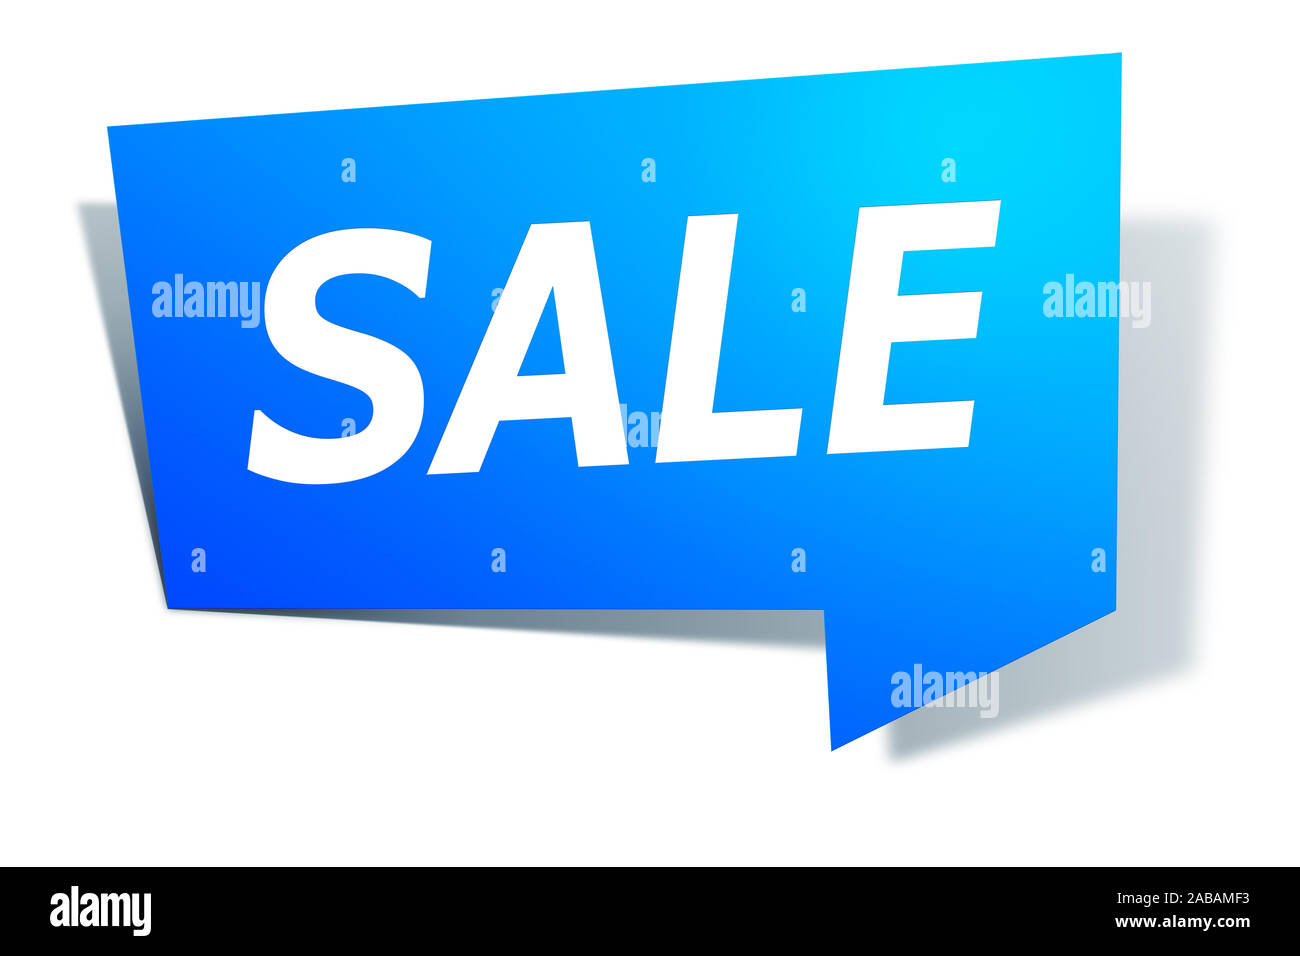 Ein blaues Etikett vor weissem Hintergrund mit der Aufschrift: "SALE" Stock Photo